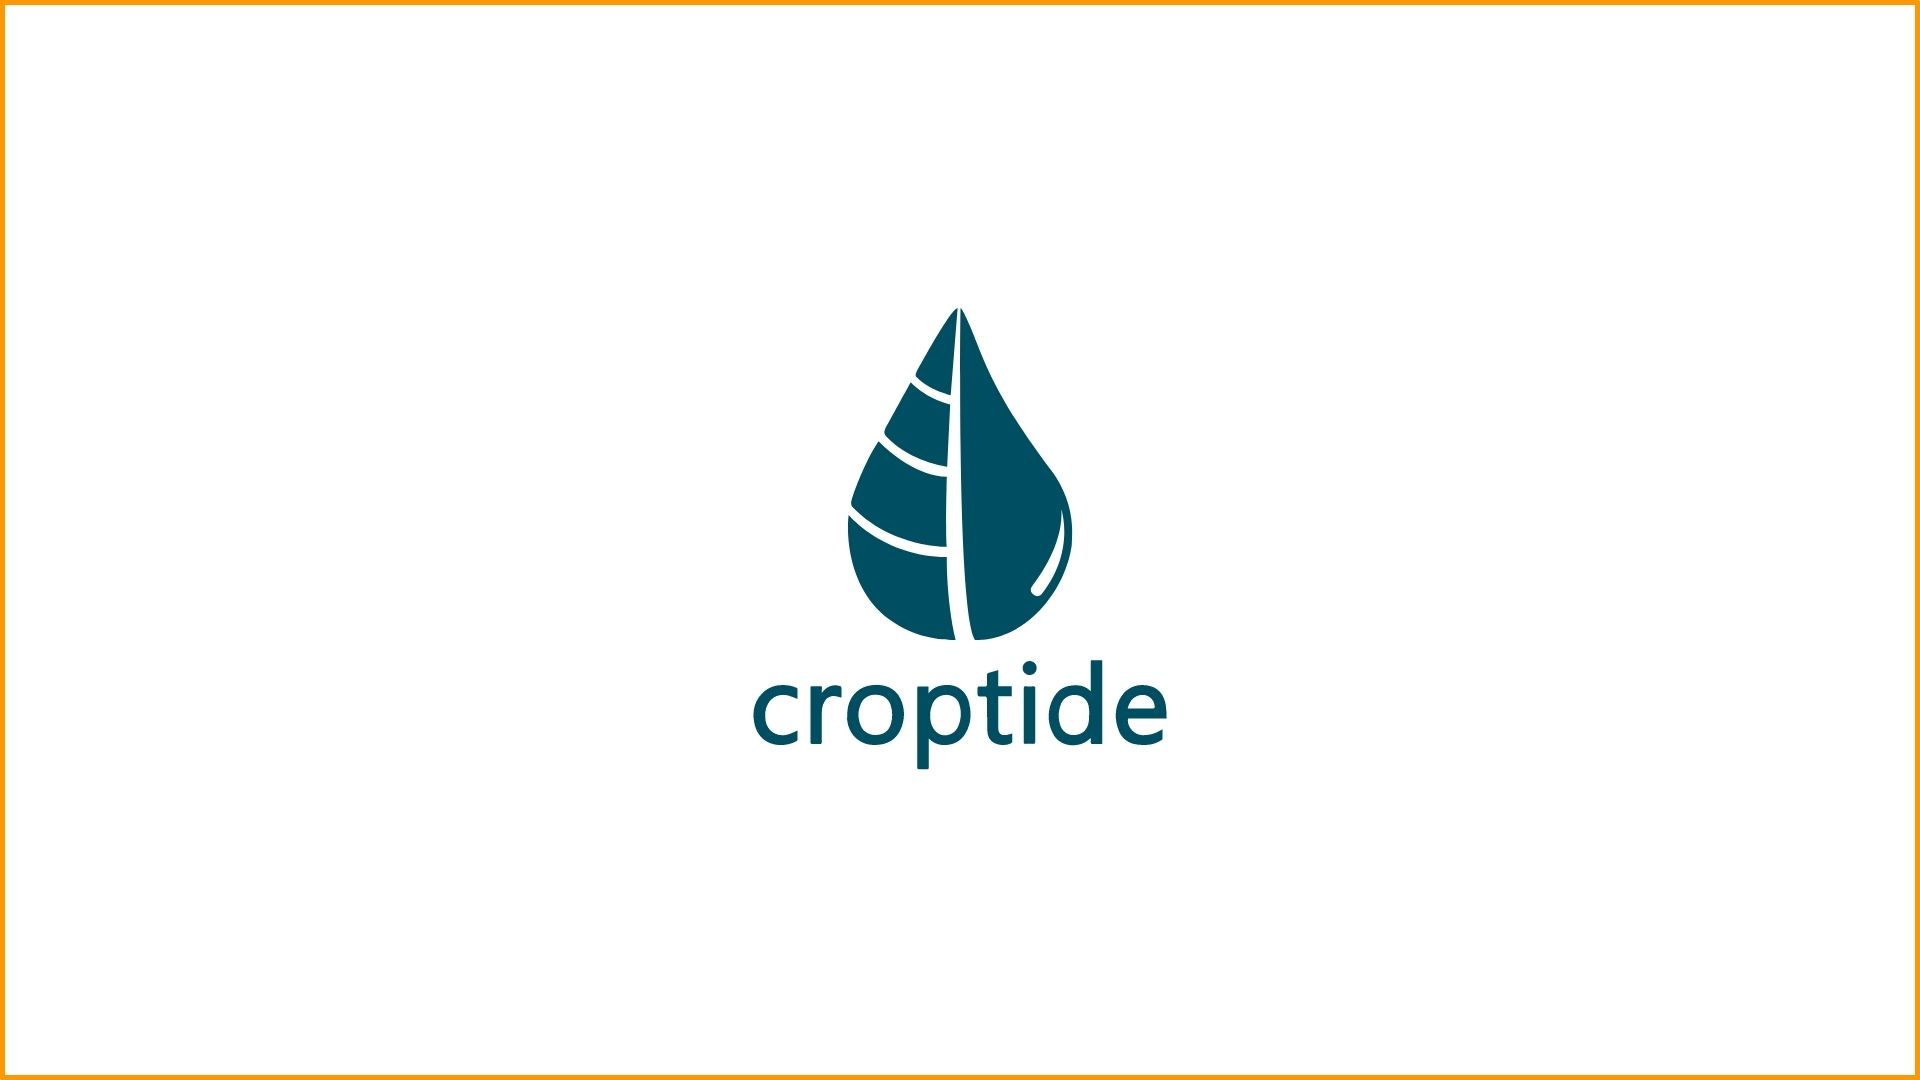 Croptide